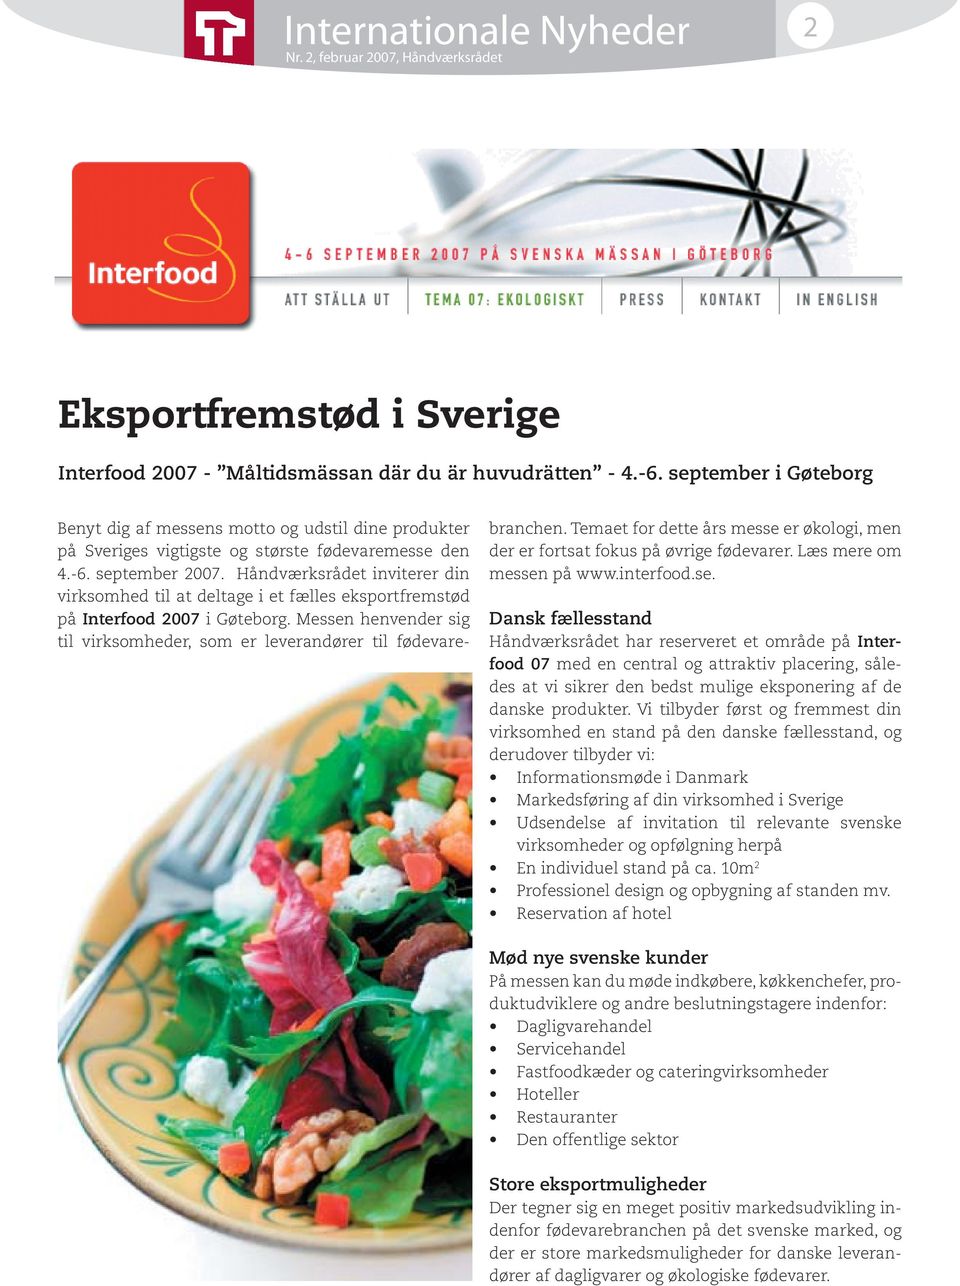 Håndværksrådet inviterer din virksomhed til at deltage i et fælles eksportfremstød på Interfood 2007 i Gøteborg. Messen henvender sig til virksomheder, som er leverandører til fødevarebranchen.